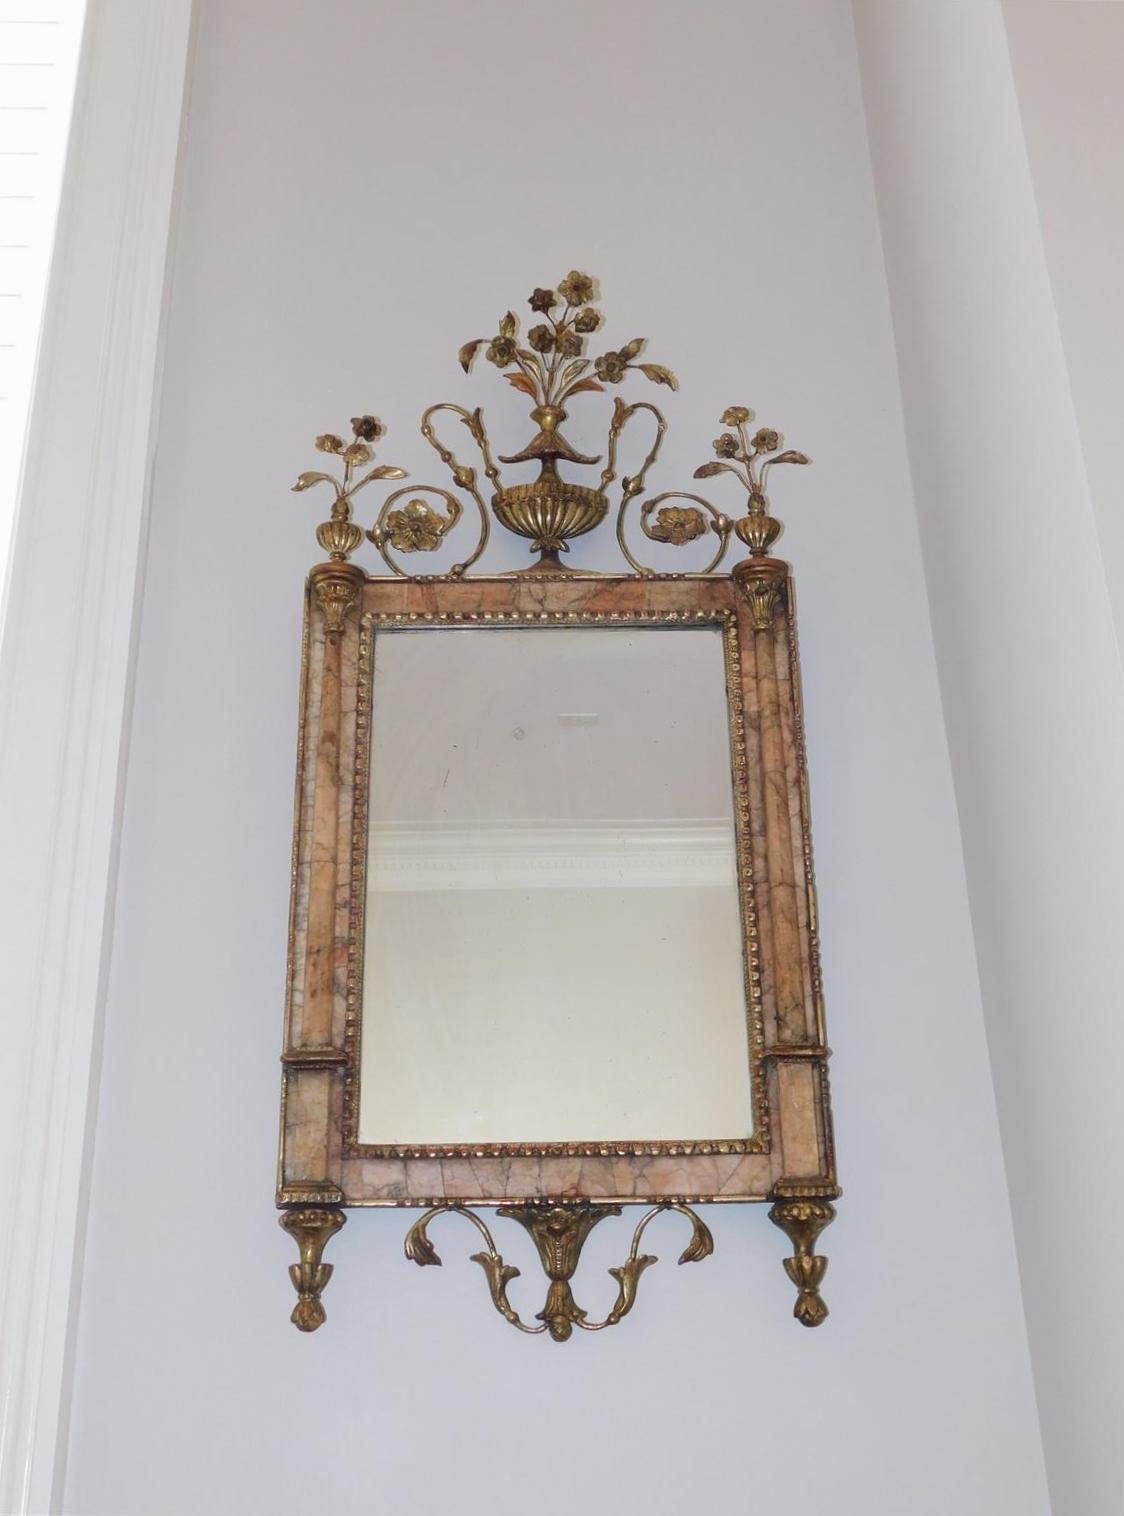 Miroir mural néoclassique italien en marbre de Bilboa et bois doré avec urne de feuillage. Le miroir a conservé son verre argenté d'origine et son support en bois, Fin du 18e siècle